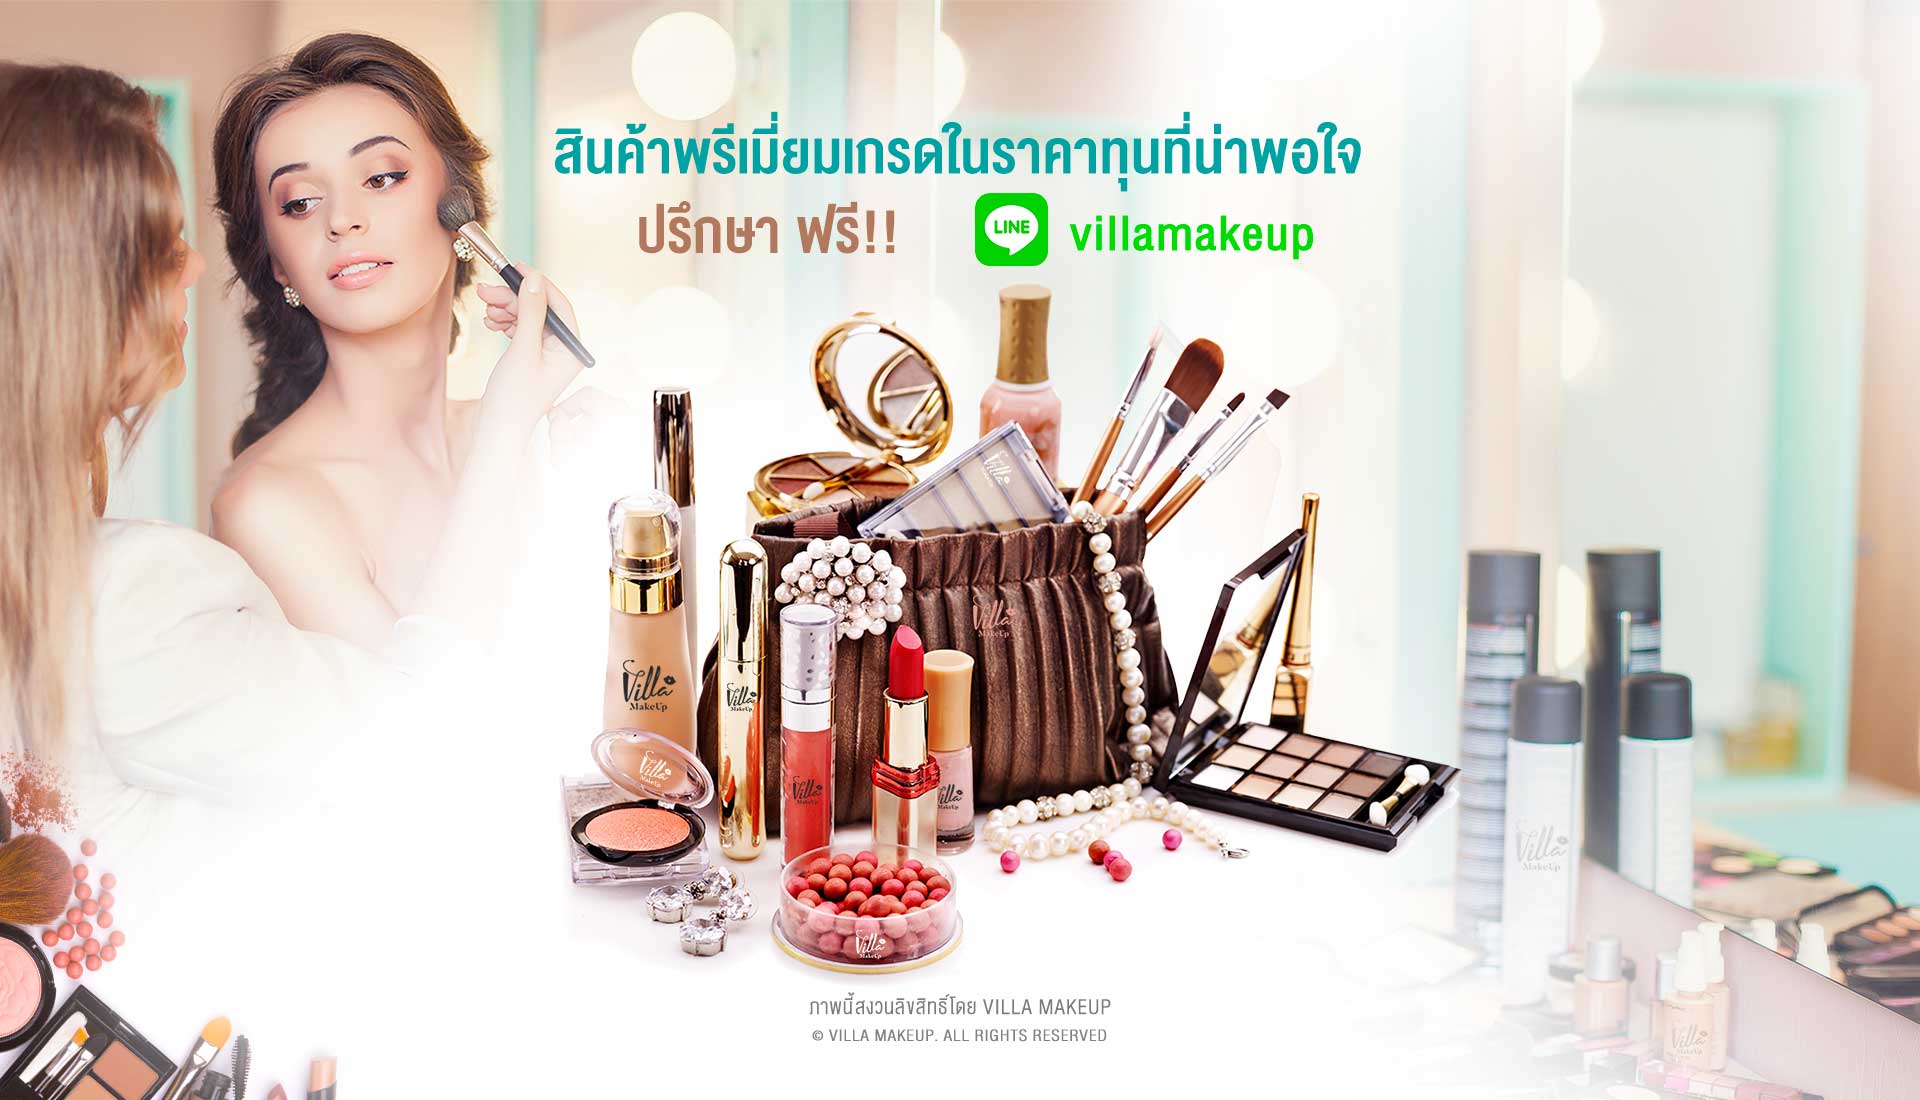 Villa Makeup สินค้าพรีเมี่ยมเกรดในราคาทุนที่น่าพอใจ ปรึกษาฟรี!! Villa Makeup; รับผลิต MAKEUP; Cosmetics; เครื่องสำอาง; เกรด Premium จากเกาหลี; KOREA; OEM/ODM Manufacturer; พร้อมนำเข้าและทำการตลาดแบบ; One Stop Service; บริการออกแบบสินค้าสวยระดับ Counter Brand; ลิปสติก; อายไลน์เนอร์; คอสเมติก; เครื่องสำอาง; เมคอัพ; คู่ชั่น Cushion; แป้งฝุ่น แป้งพัฟ; ดินเขียนคิ้ว มาสคาร่า Mascara; Eyeliner; Eye Brow; รองพื้น; พาเลตต์; หน้า; คอนซีลเลอร์; ไพรเมอร์; บรอนเซอร์; รองพื้น; บลัช; บีบีและคอเรคเตอร์ครีม; ไฮไลท์; แป้ง; คอนทัวร์; ตา; อายไลเนอร์; เมคอัพรีมูฟเวอร์; อายแชโดว์; คิ้ว; อุปกรณ์แต่งตา; ยาทาเล็บ; อายไพรเมอร์และเบส; ขนตาปลอม; มาสคาร่า; ปาก; ลิปเพิ่มริมฝีปากอวบอิ่ม; ลิปสติก; ลิปบาล์มและลิปบำรุงริมฝีปากลิปพาเลท & ลิปเซ็ท; ลิปกลอส; ดินสอเขียนขอบปาก; เมคอัพพาเลทและเมคอัพเซ็ท; พาเลทเครื่องสำอาง; ลิปดินสอ; แป้งคูชั่น; cushion powder grid; ผลิตเครื่องสำอาง; เครื่องสำอางค์